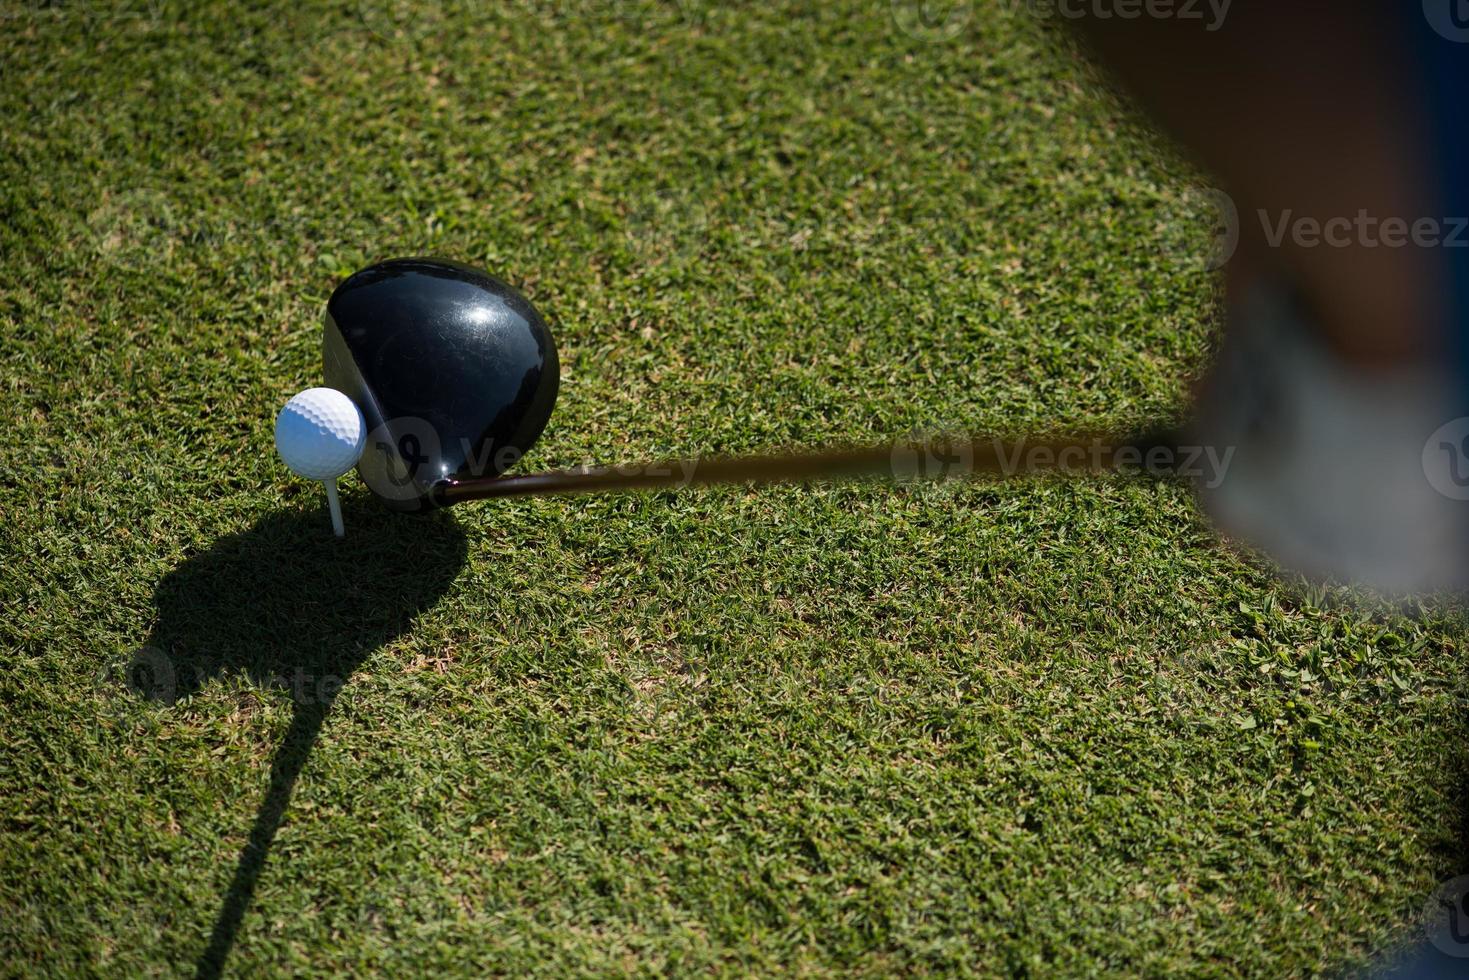 topp se av golf klubb och boll i gräs foto